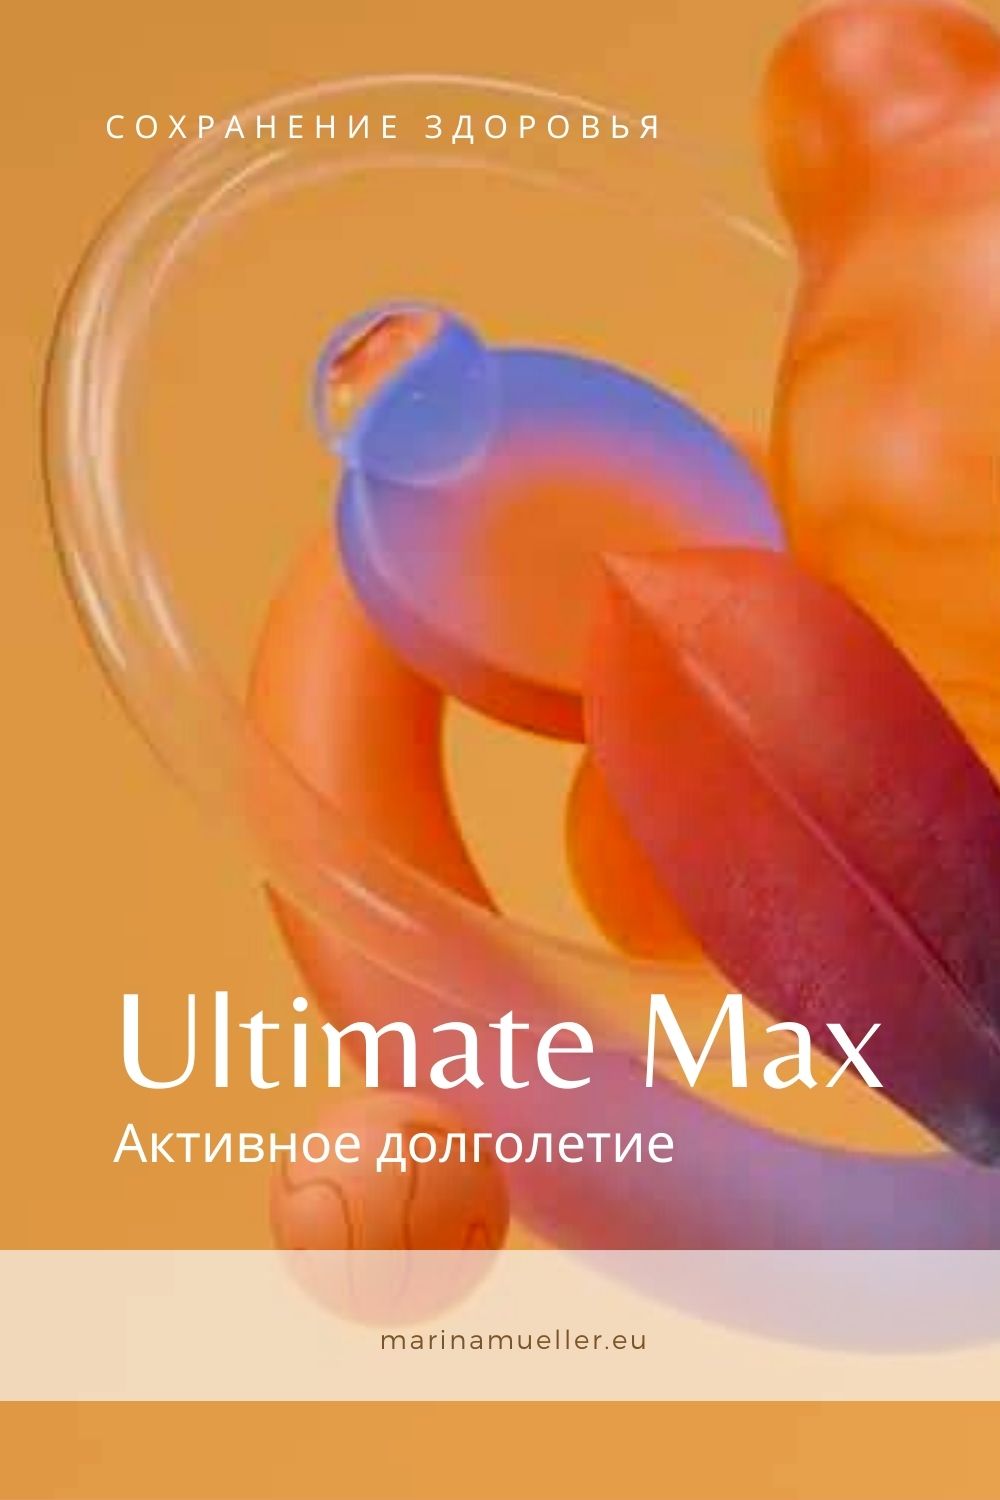 Лучшие витамины для женщин Ultimate Max